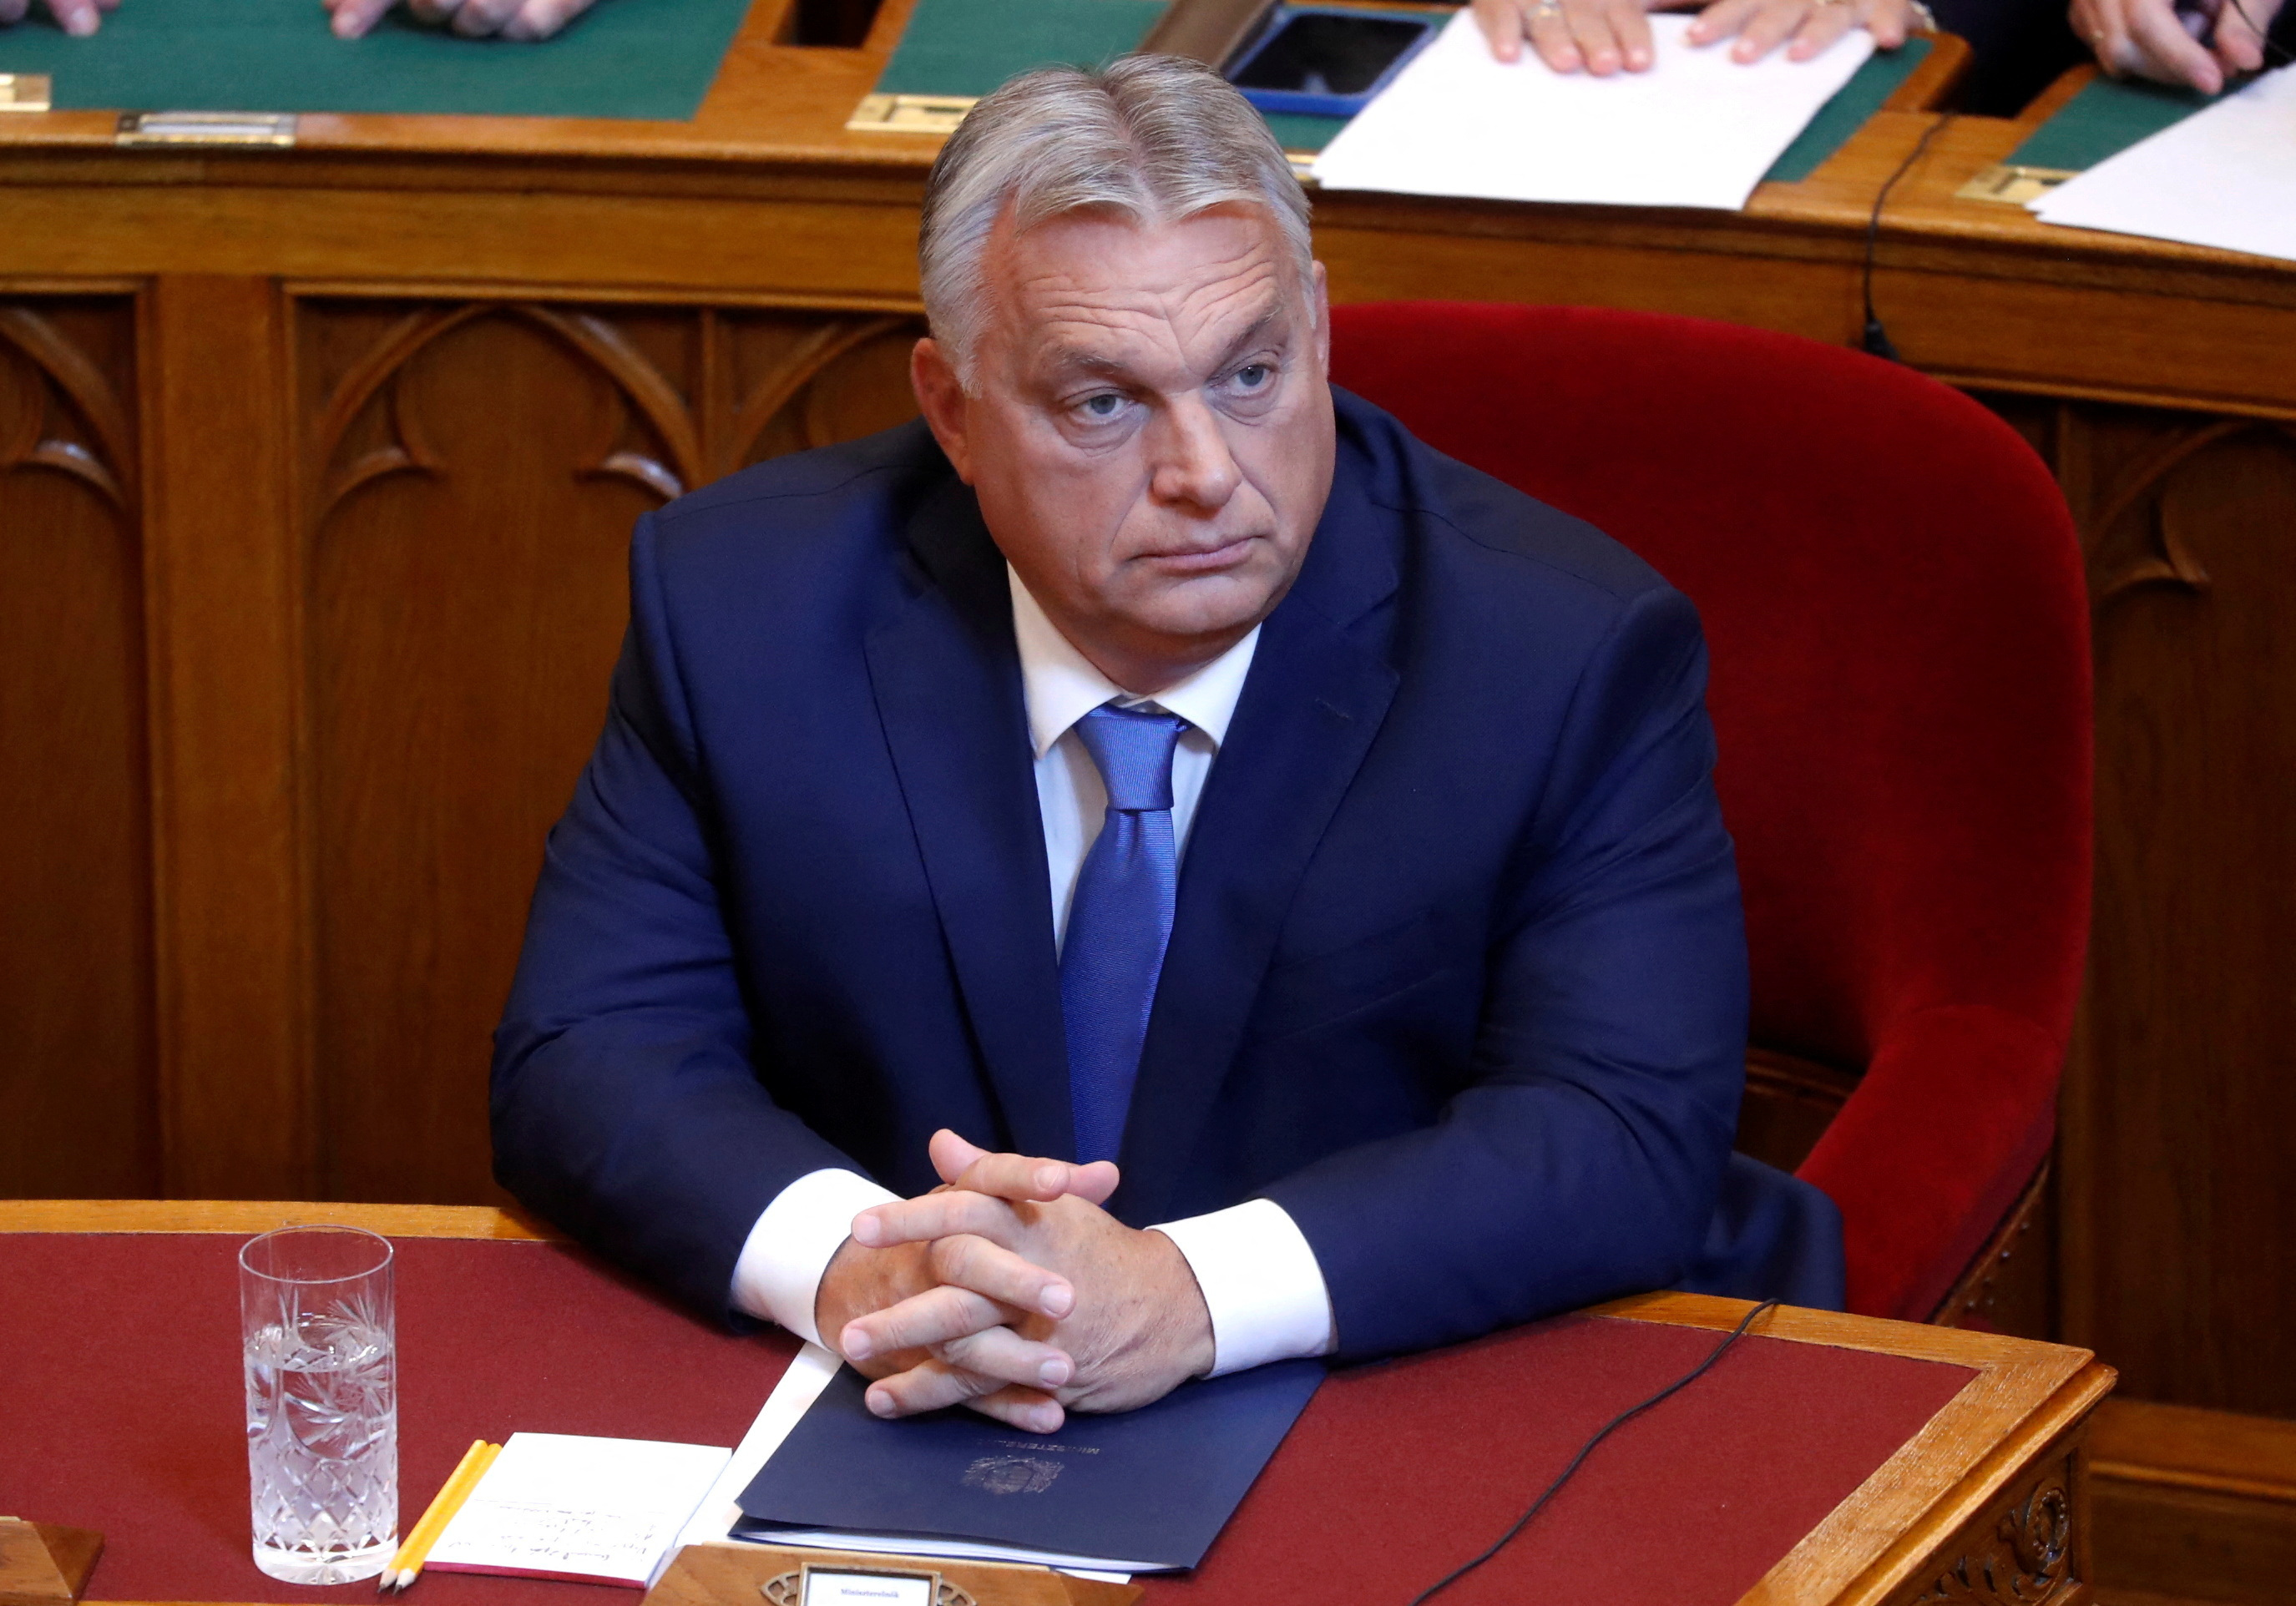 Ο Όρμπαν λέει ότι στην Ουγγαρία πρέπει να επιλυθούν δύσκολα ζητήματα πριν από τις ενταξιακές συνομιλίες στην ΕΕ με την Ουκρανία